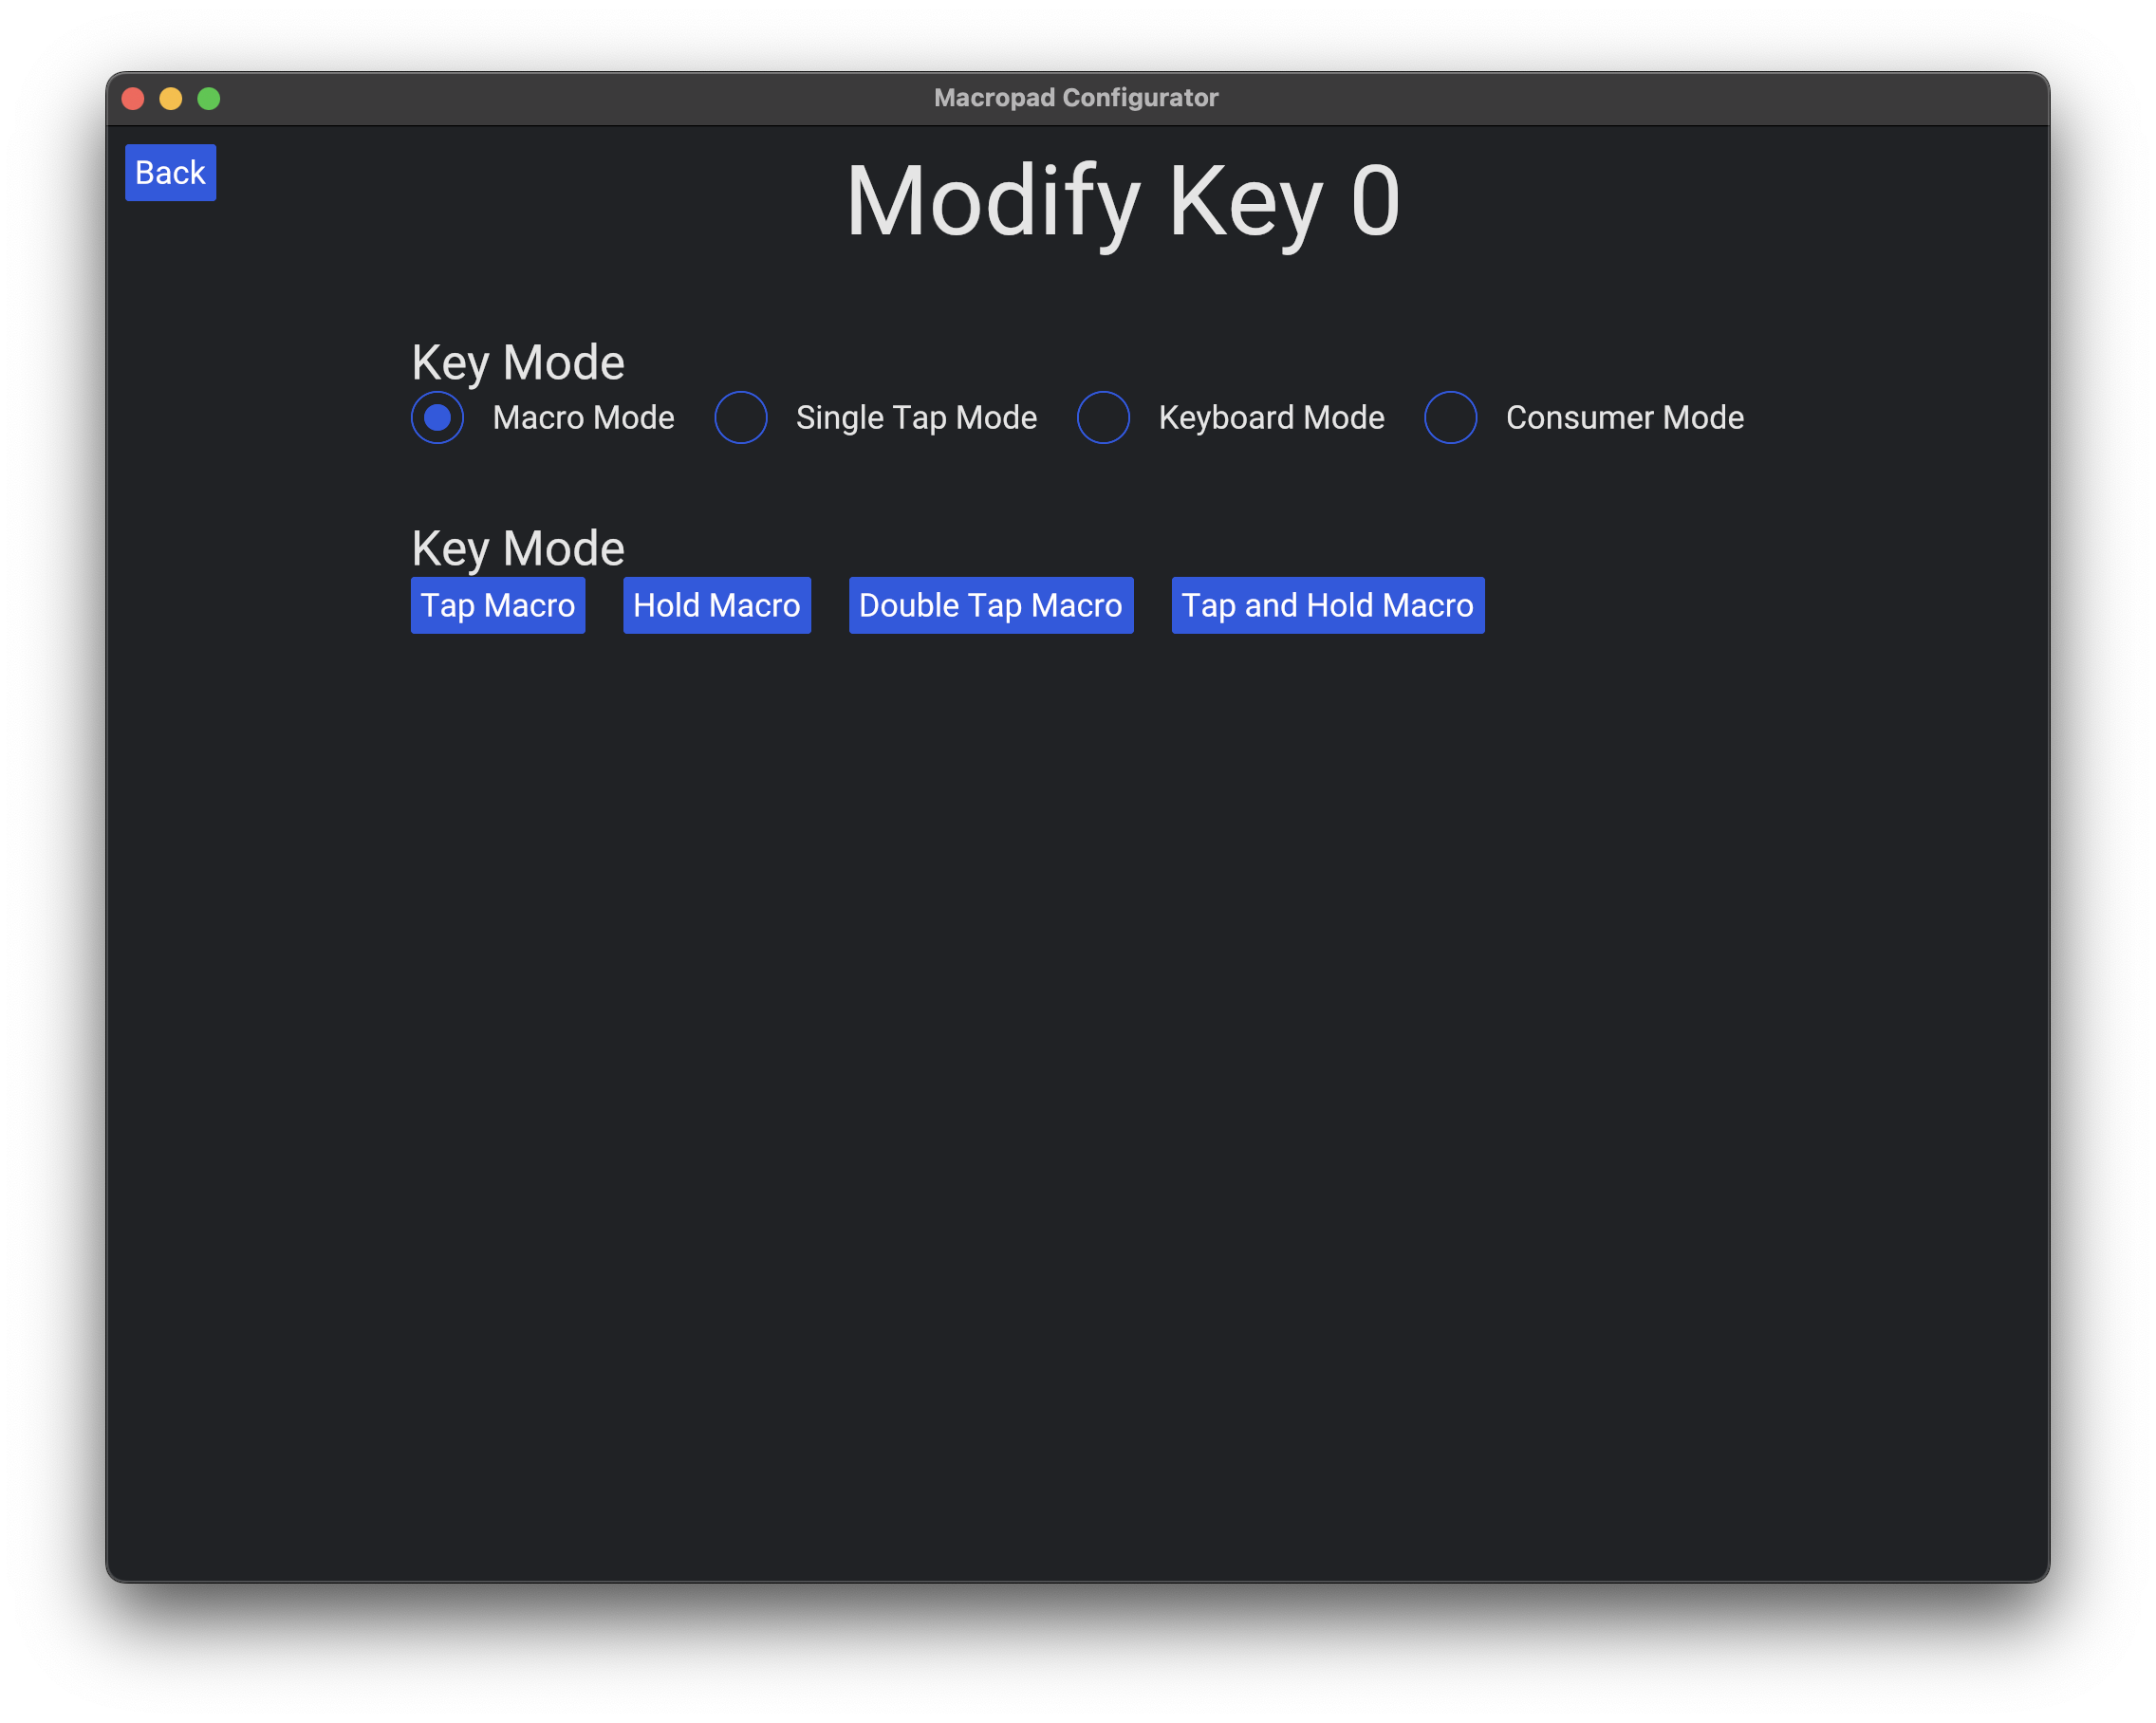 Modify key